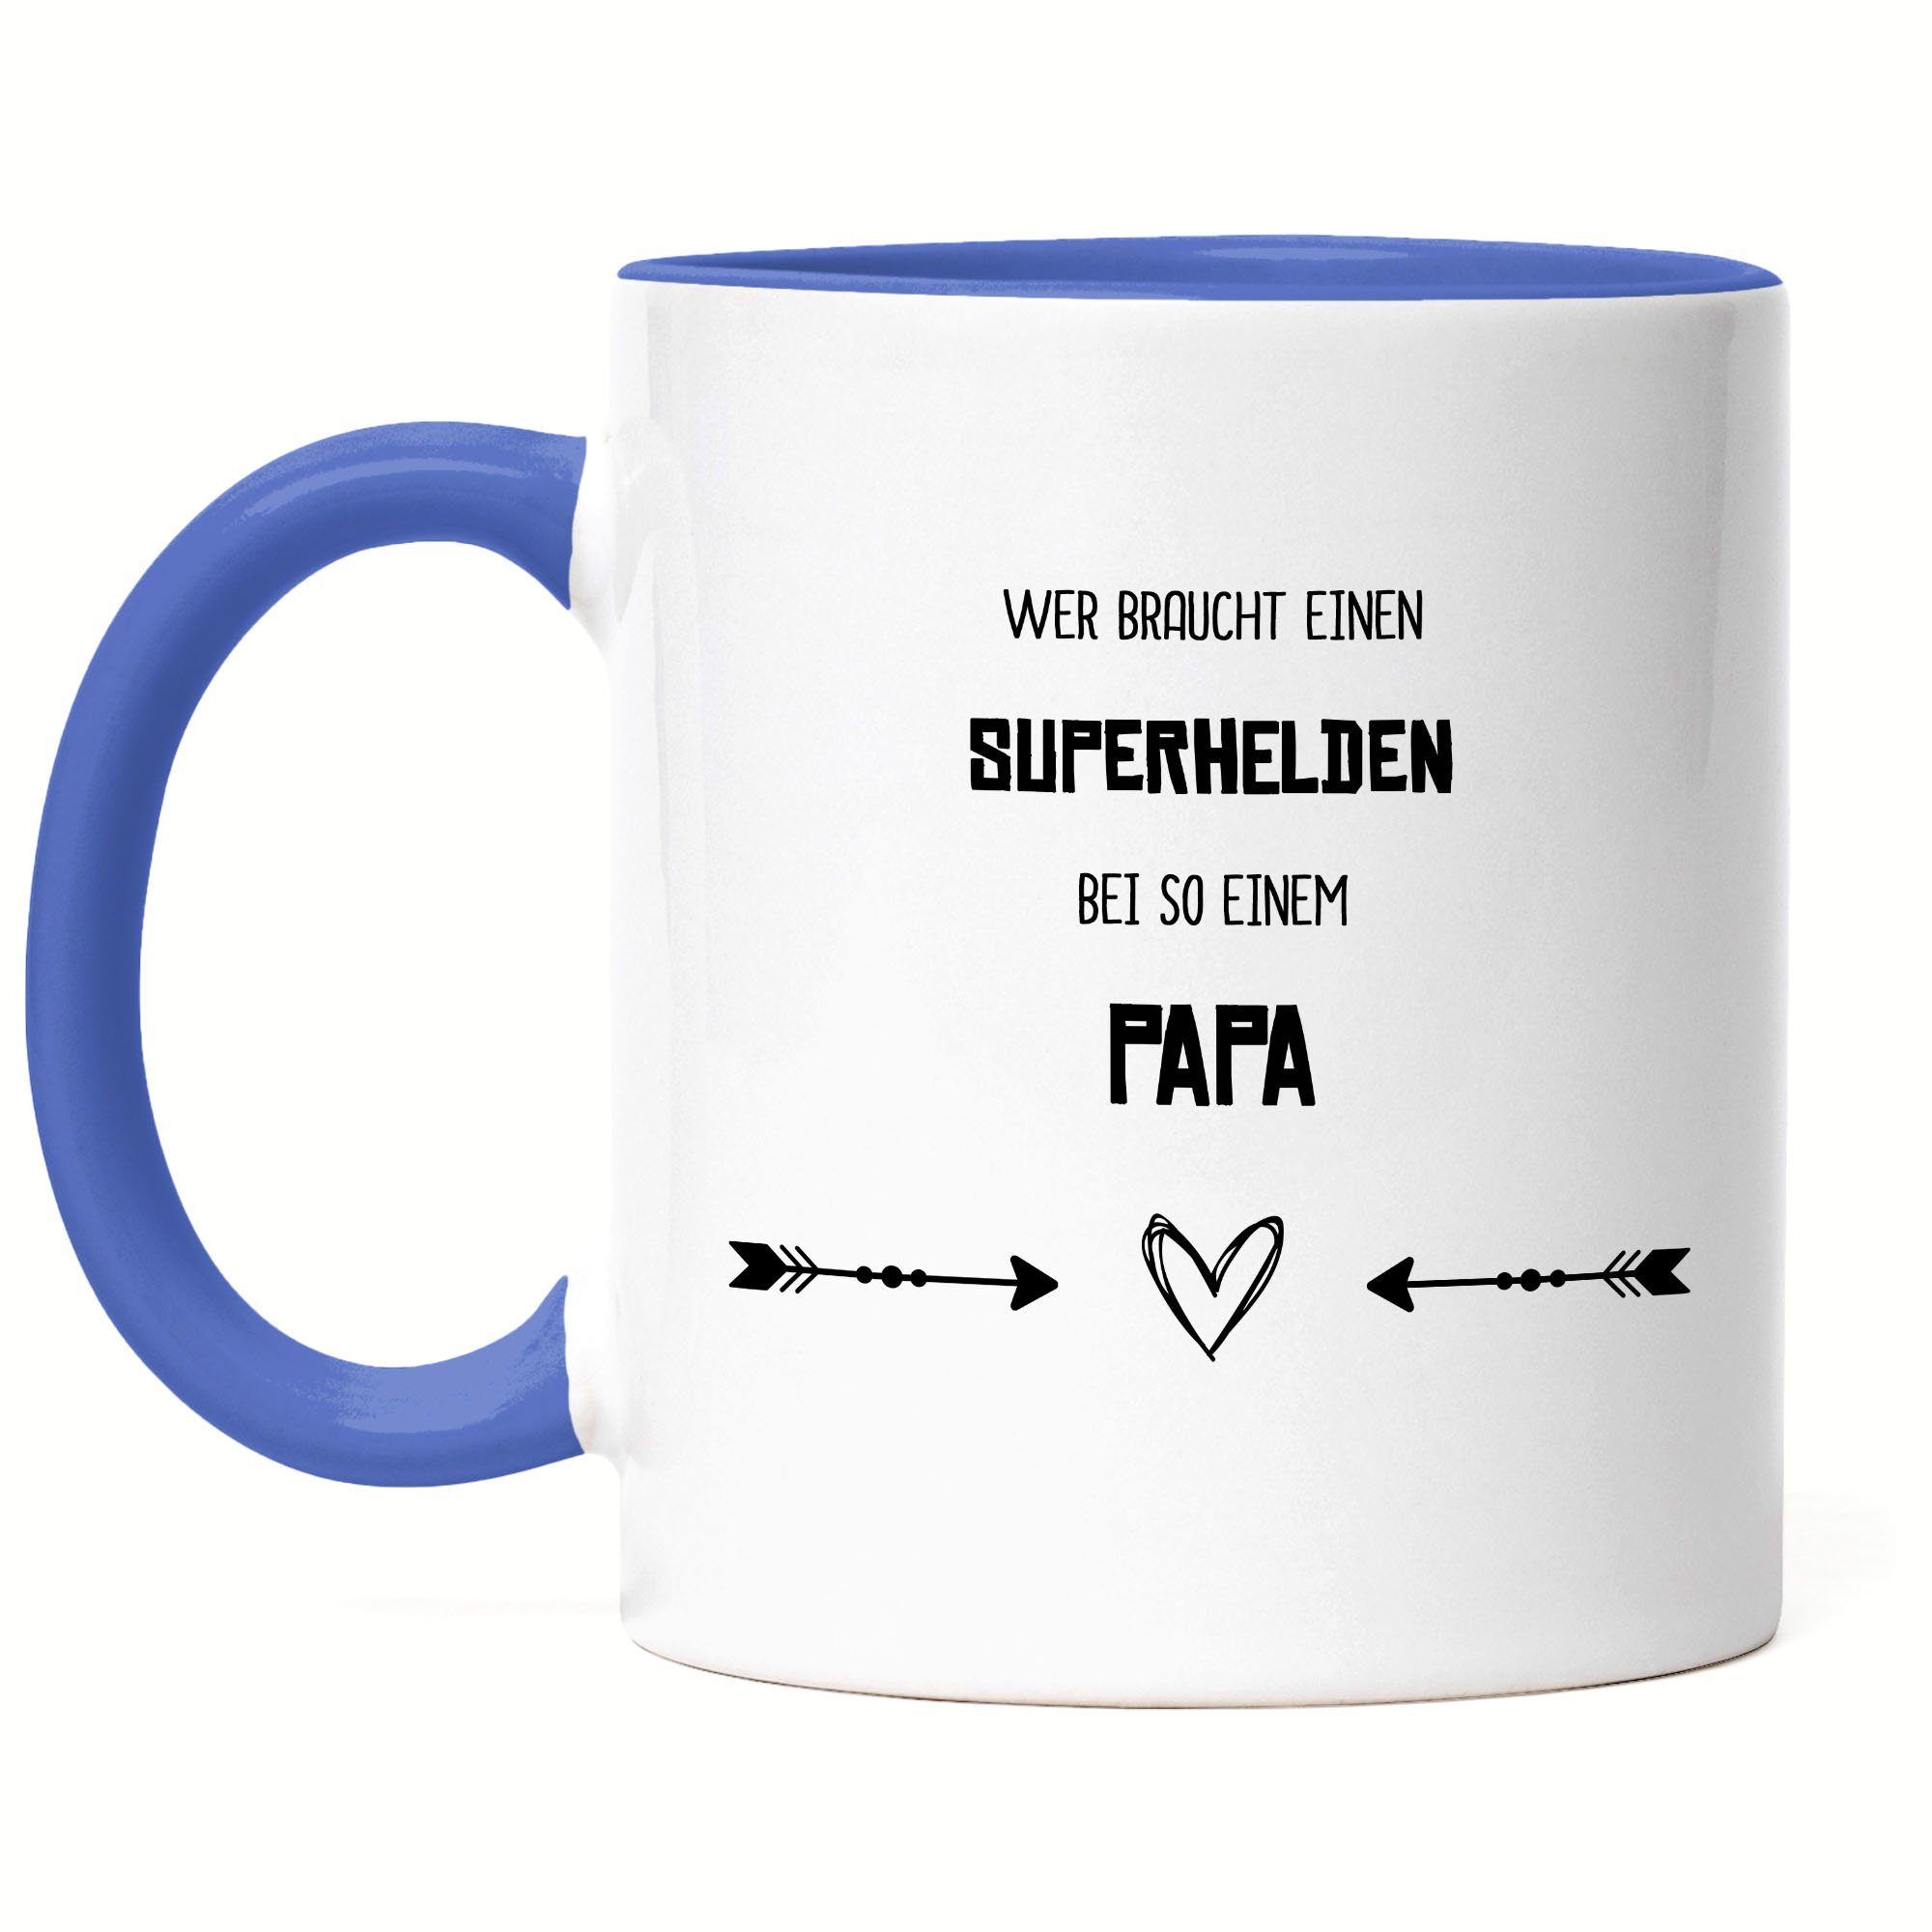 Der Keramik Hey!Print Geschenkidee Papa Welt Braucht Geburtstag, Vatertag Tasse Superhelden Bester Tasse Wer Blau